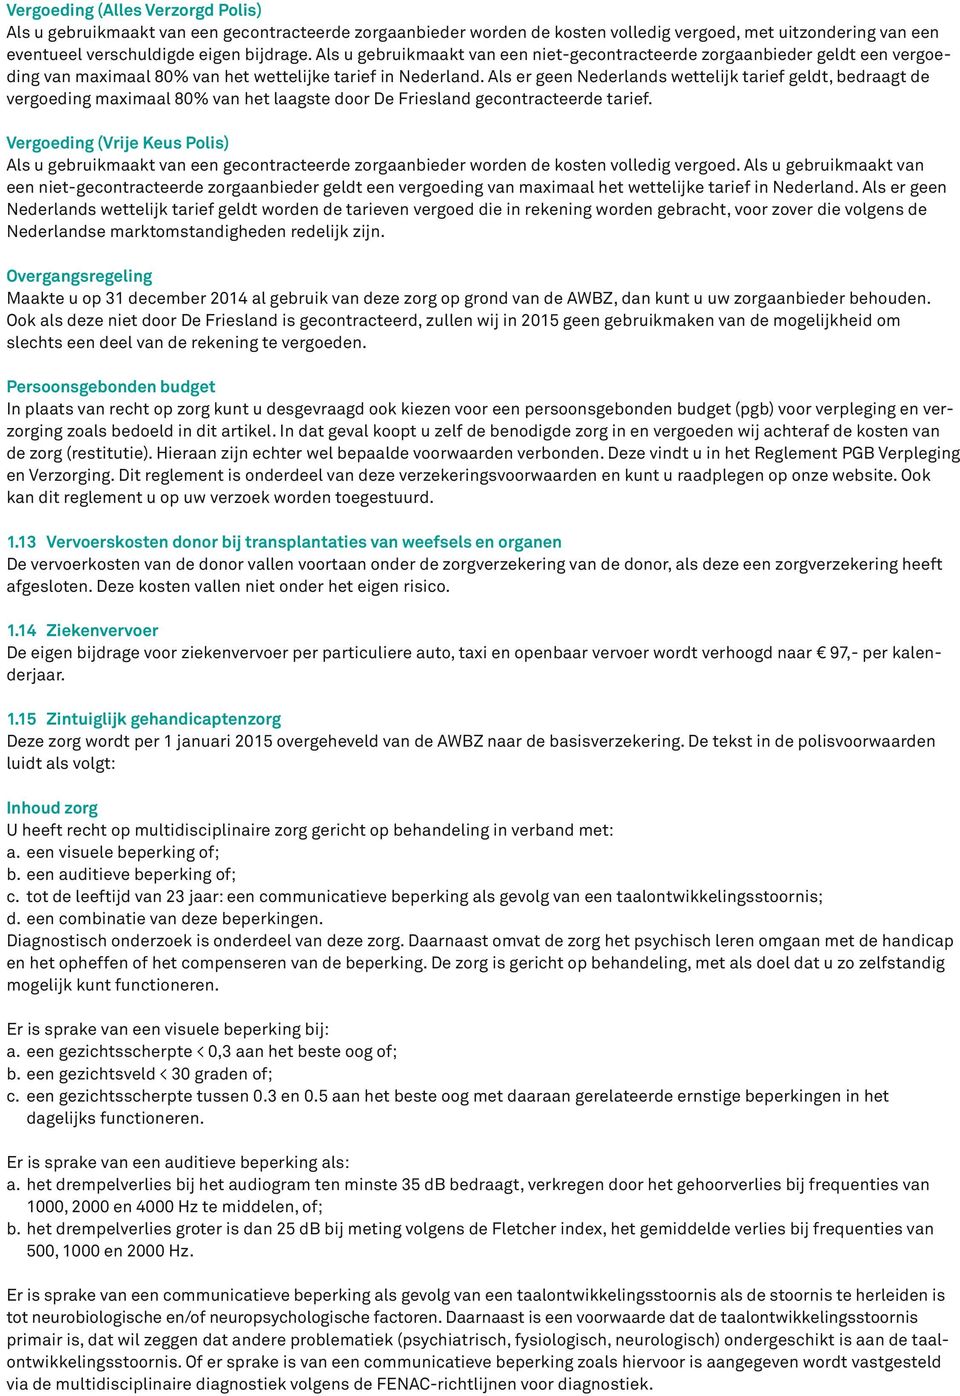 Als er geen Nederlands wettelijk tarief geldt, bedraagt de vergoeding maimaal 80% van het laagste door De Friesland gecontracteerde tarief.